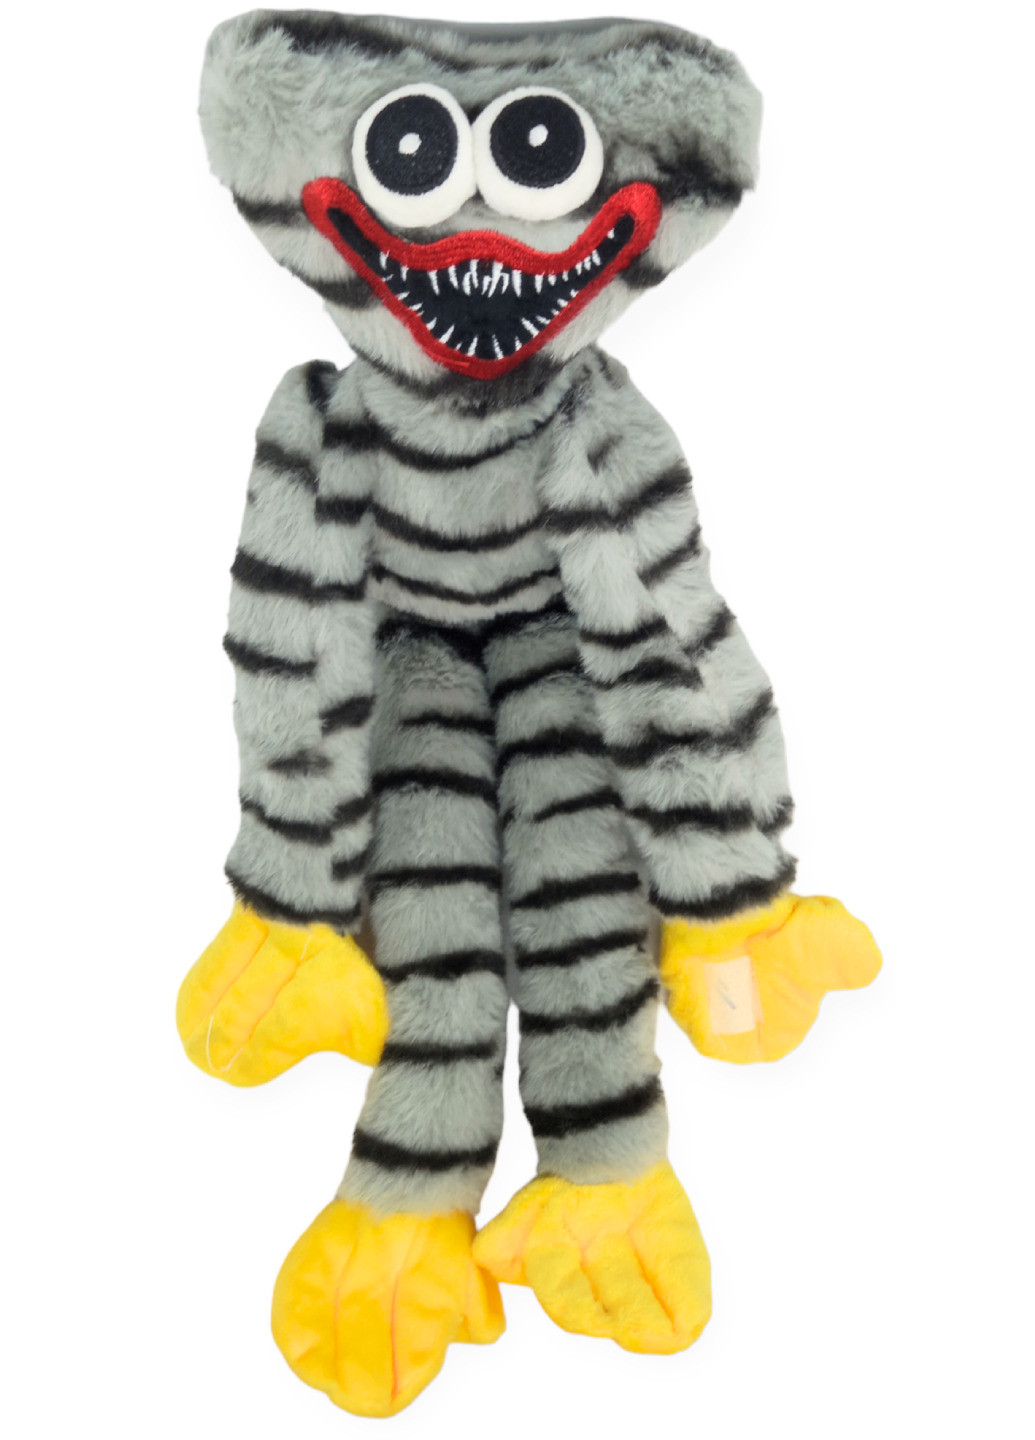 Хаги Ваги мягкая игрушка плюш 40 см с липучками на руках серый полосатый Huggy Wuggy Poppy Playtime No Brand (266702604)